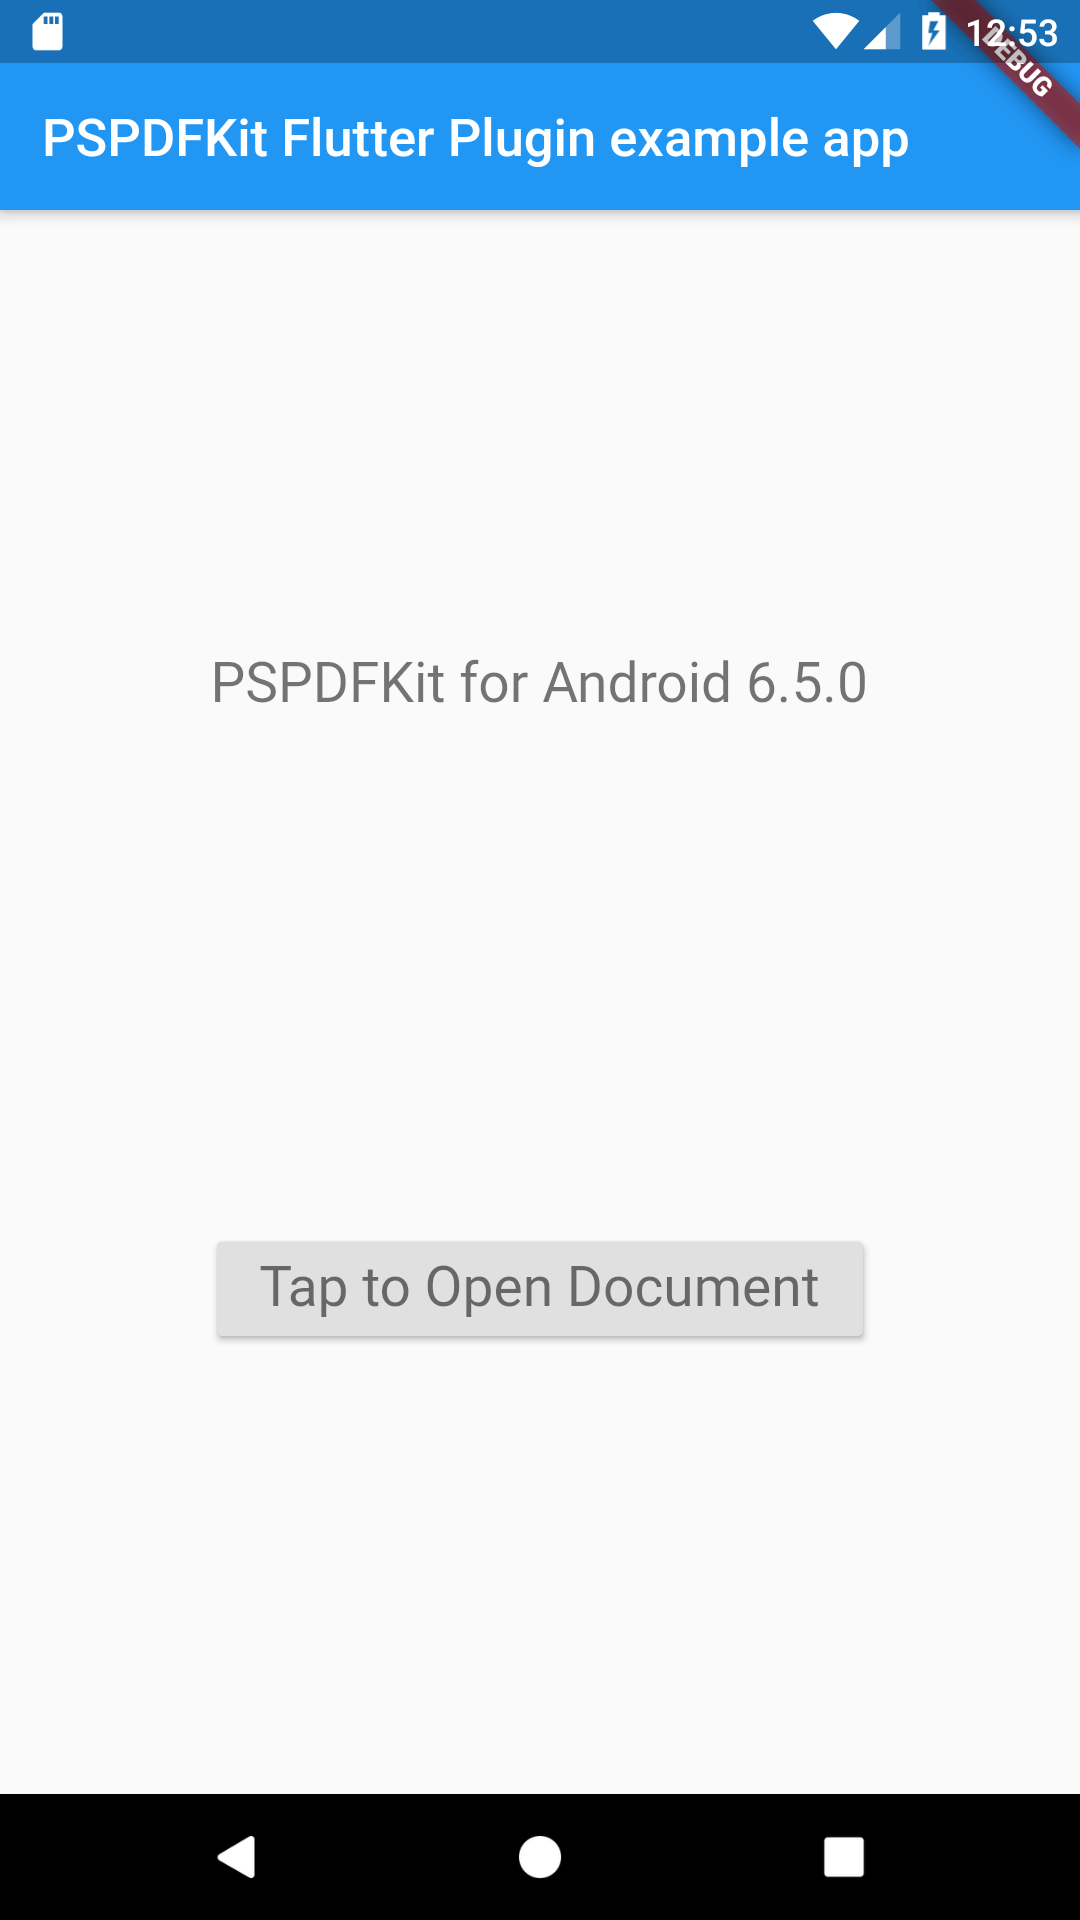 The PSPDFKit Flutter sample app.